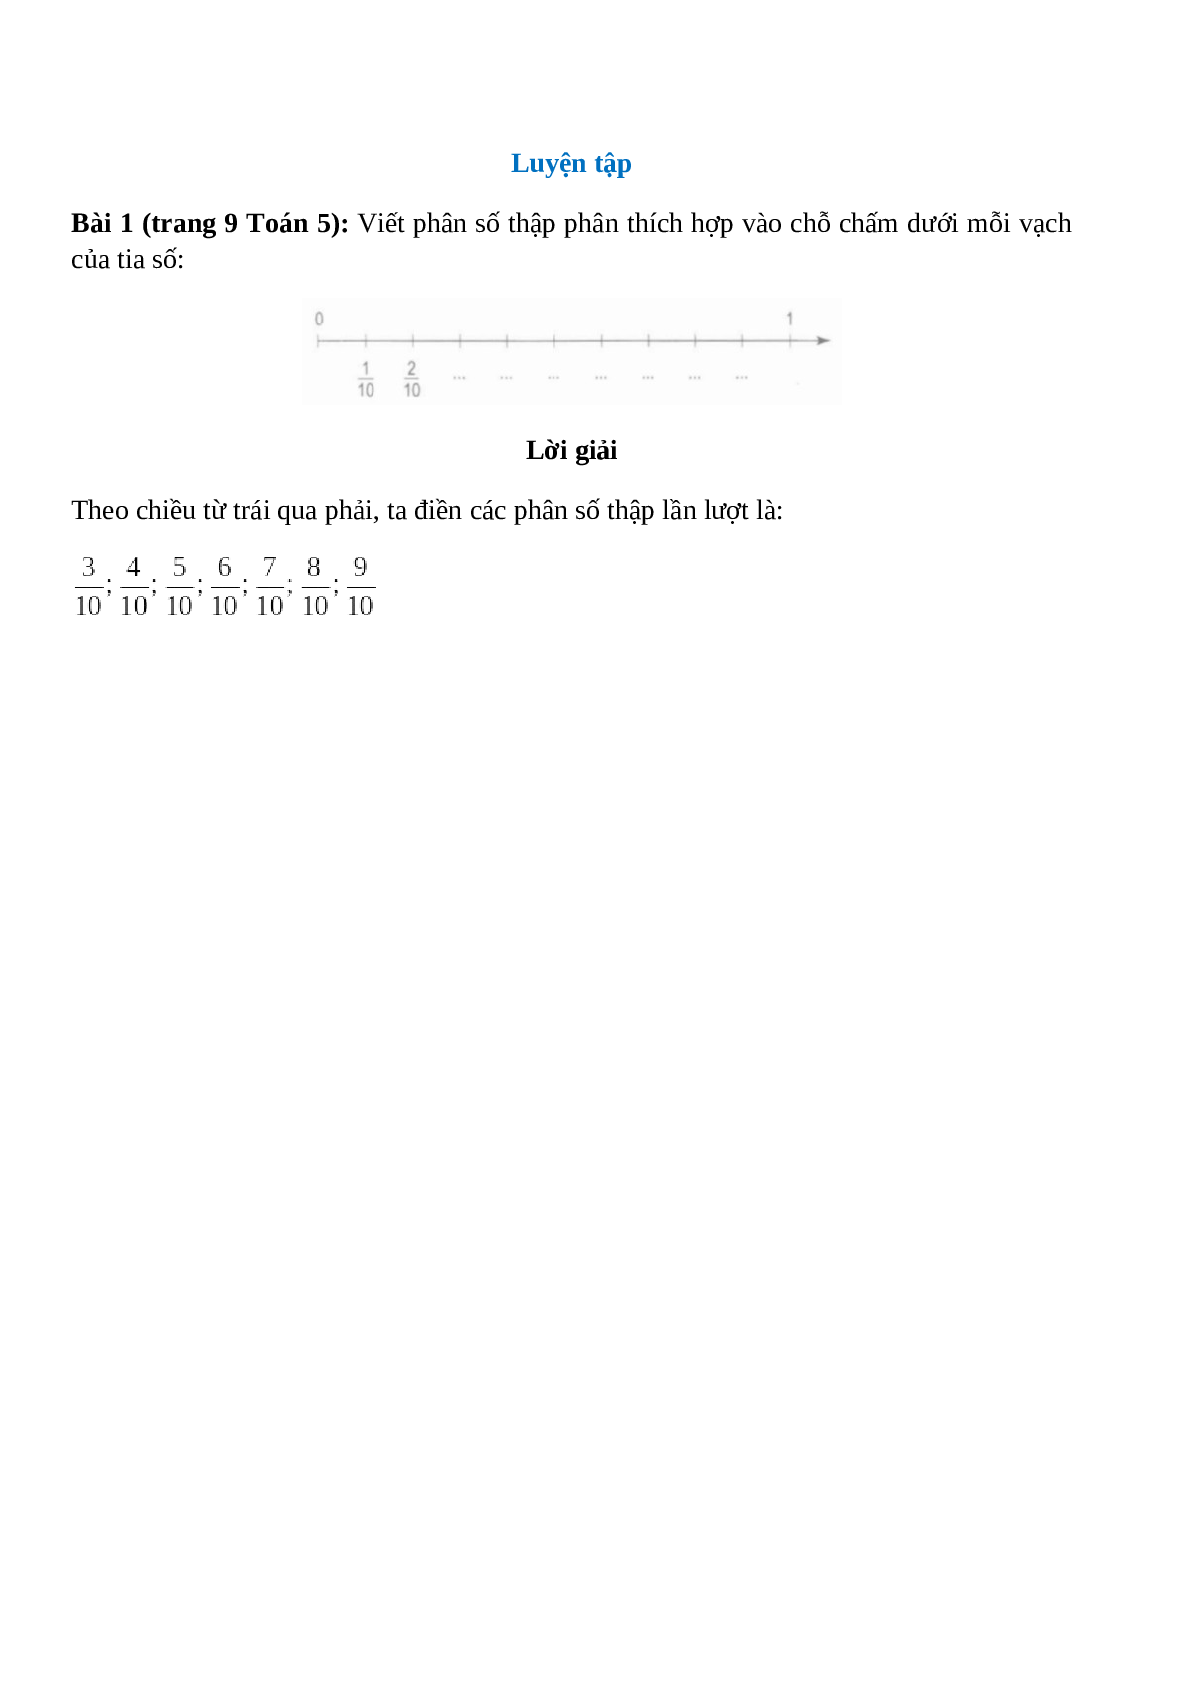 Viết phân số thập phân thích hợp vào chỗ chấm dưới mỗi vạch của tia số (trang 1)